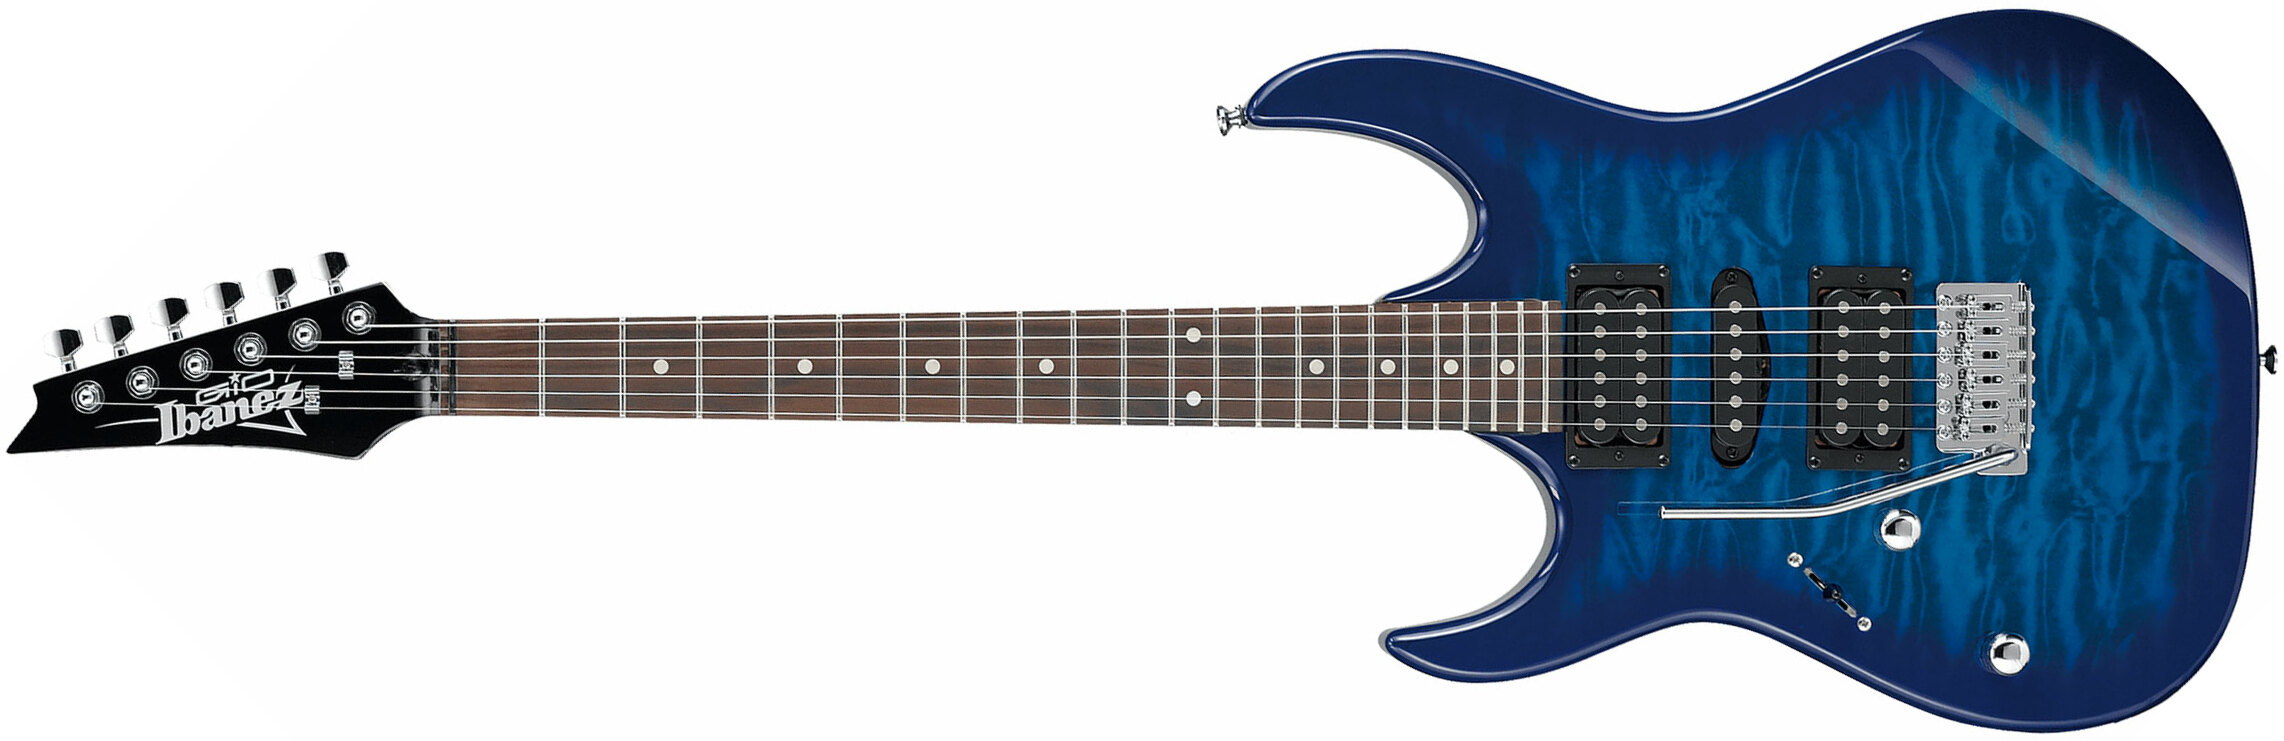 Ibanez Grx70qal Tbb Lh Gaucher Gio Hsh Trem Jat - Transparent Blue Burst - Linkshandige elektrische gitaar - Main picture